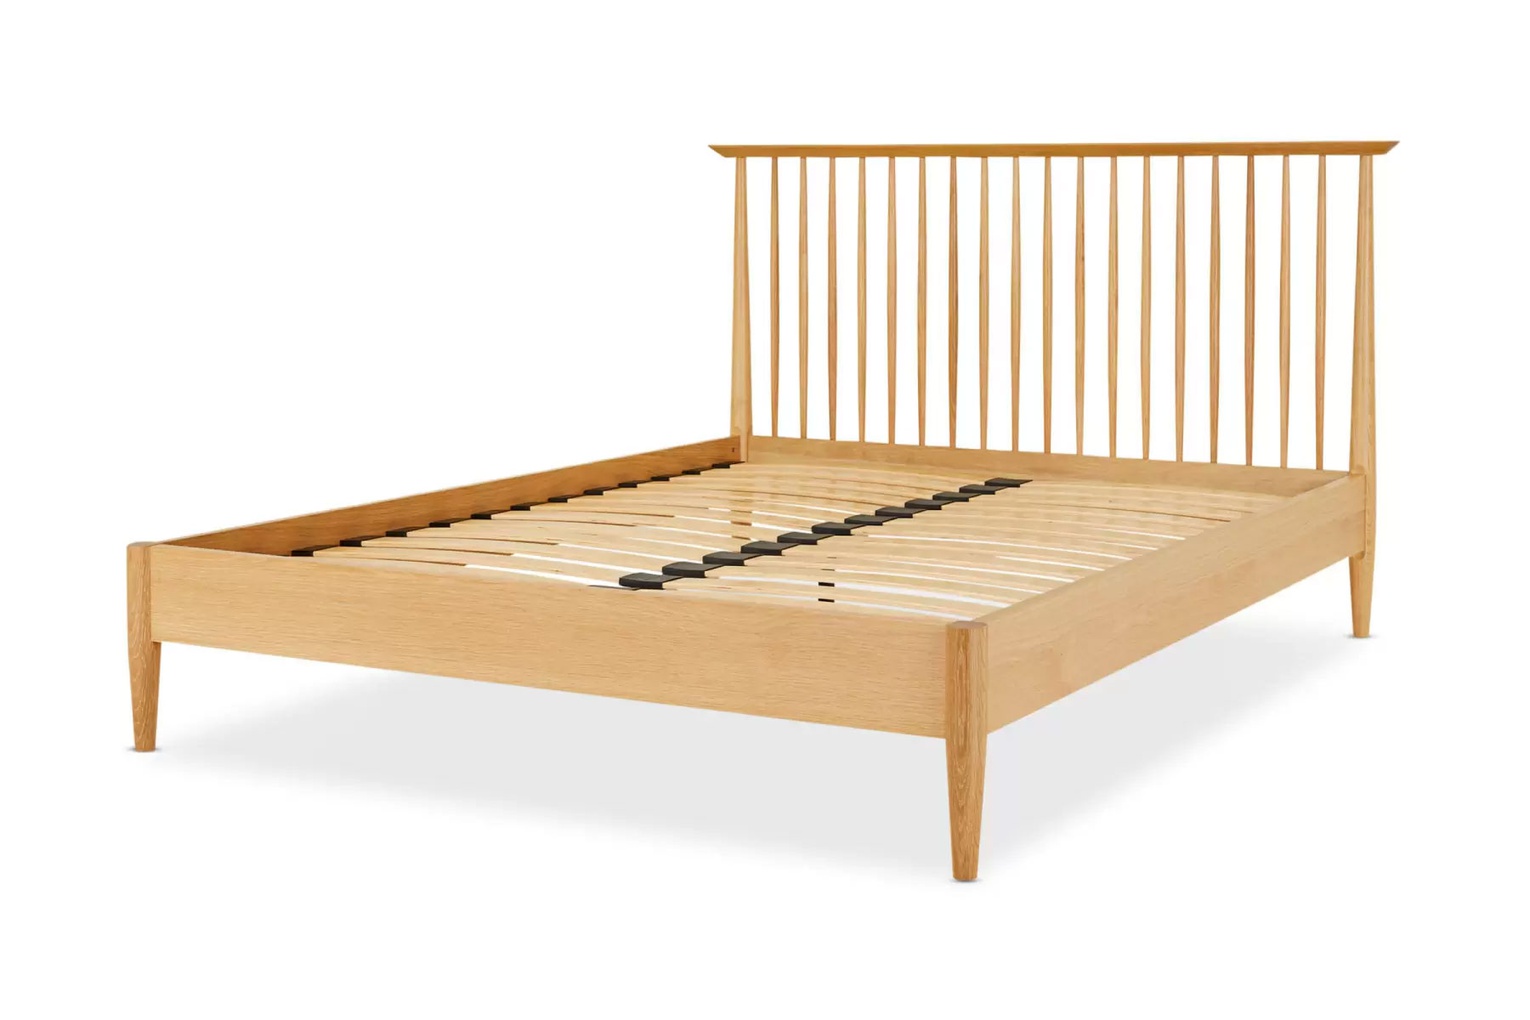 Mẫu giường gỗ sồi (Oak) được thiết kế theo phong cách tân cổ điển vô cùng cuốn hút